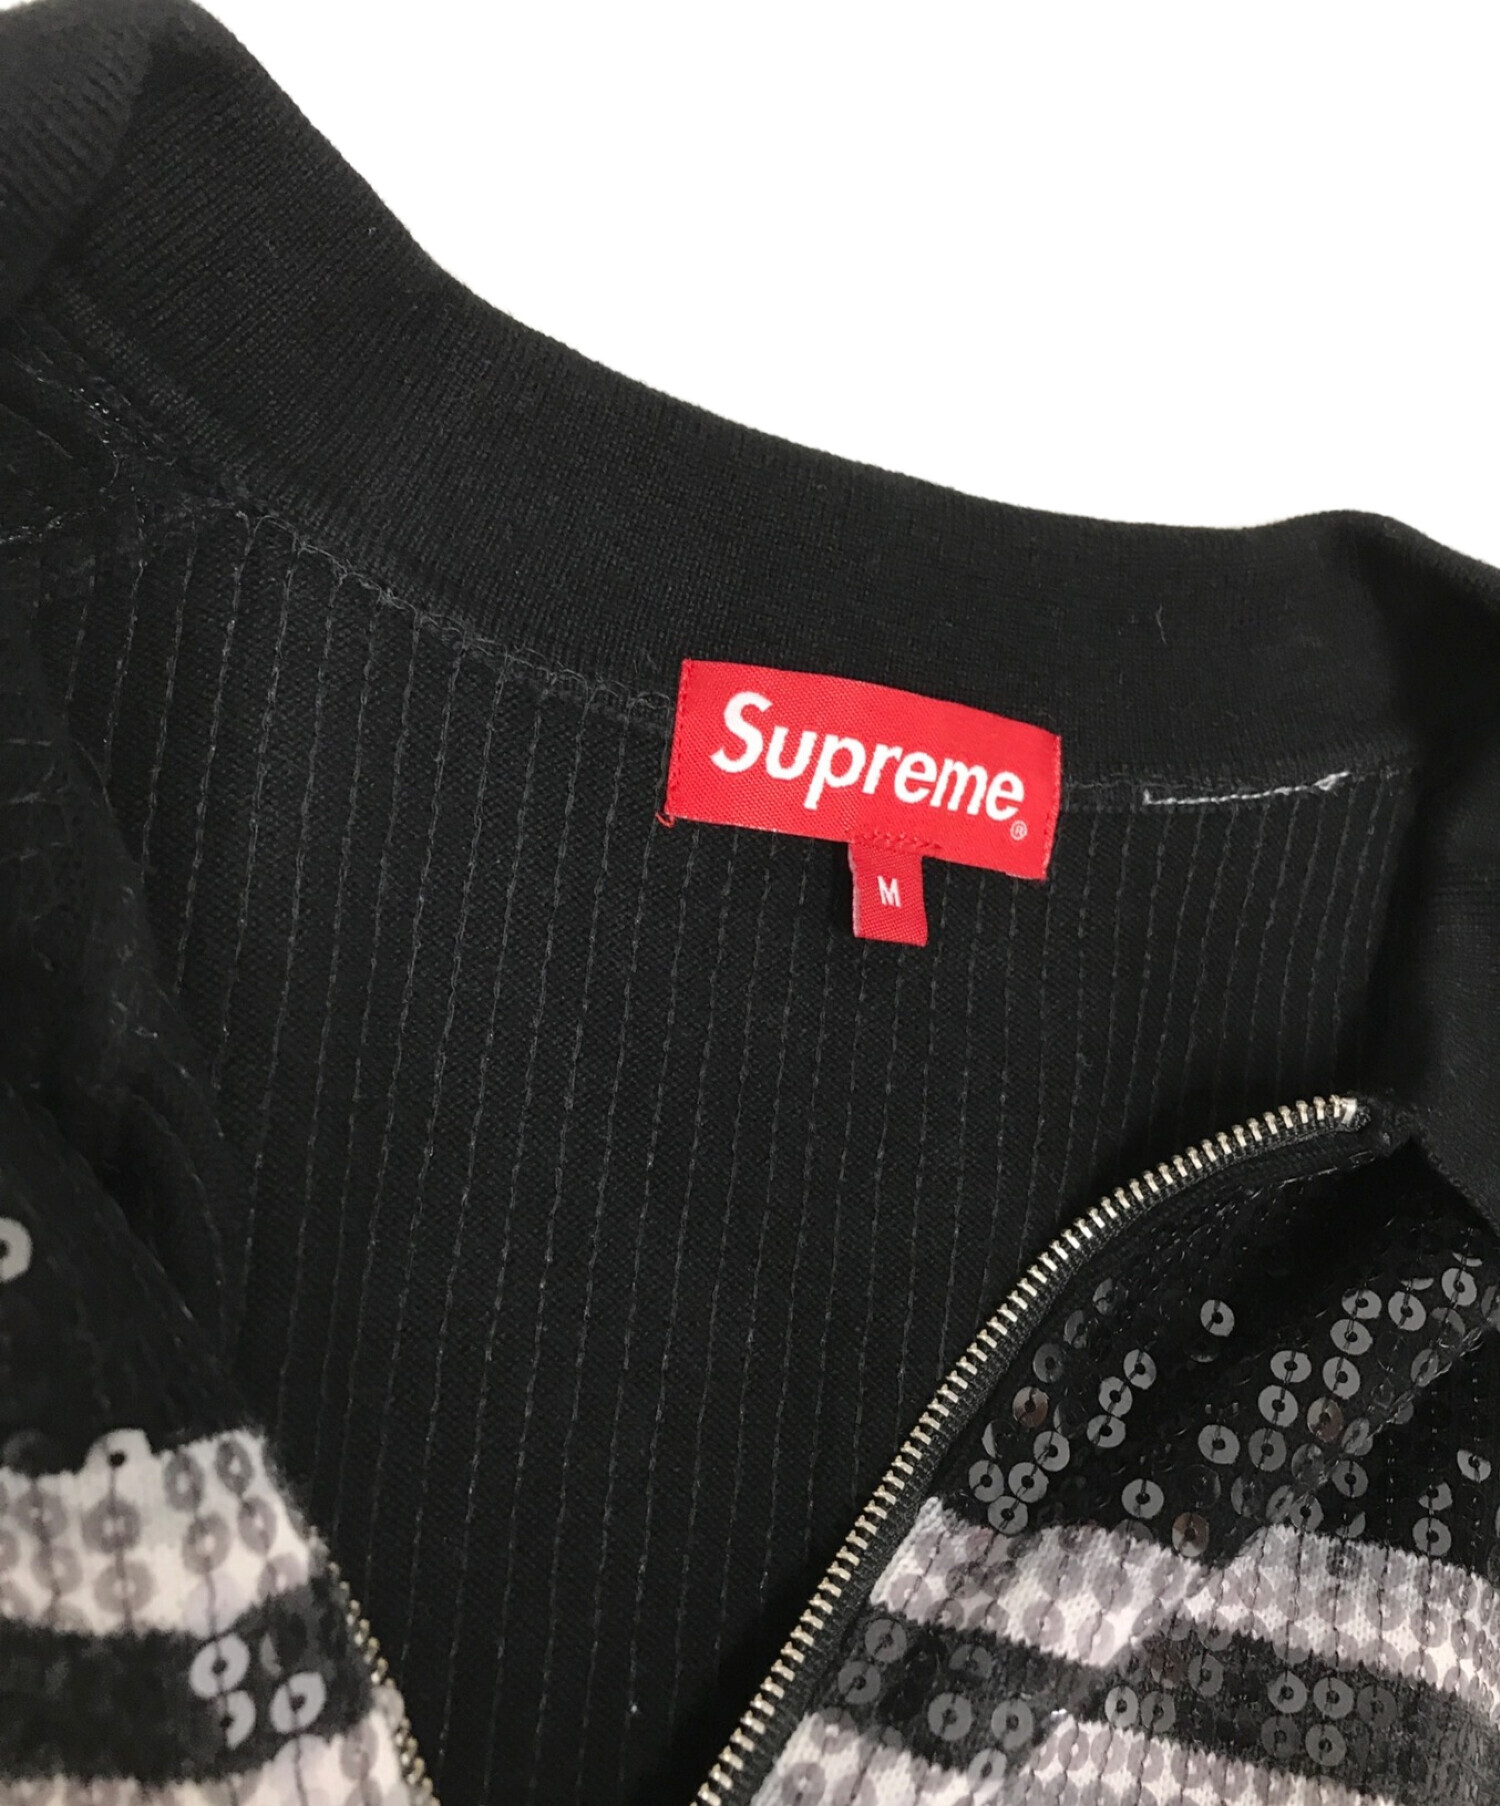 Supreme (シュプリーム) スパンコールジップポロシャツ ブラック サイズ:M